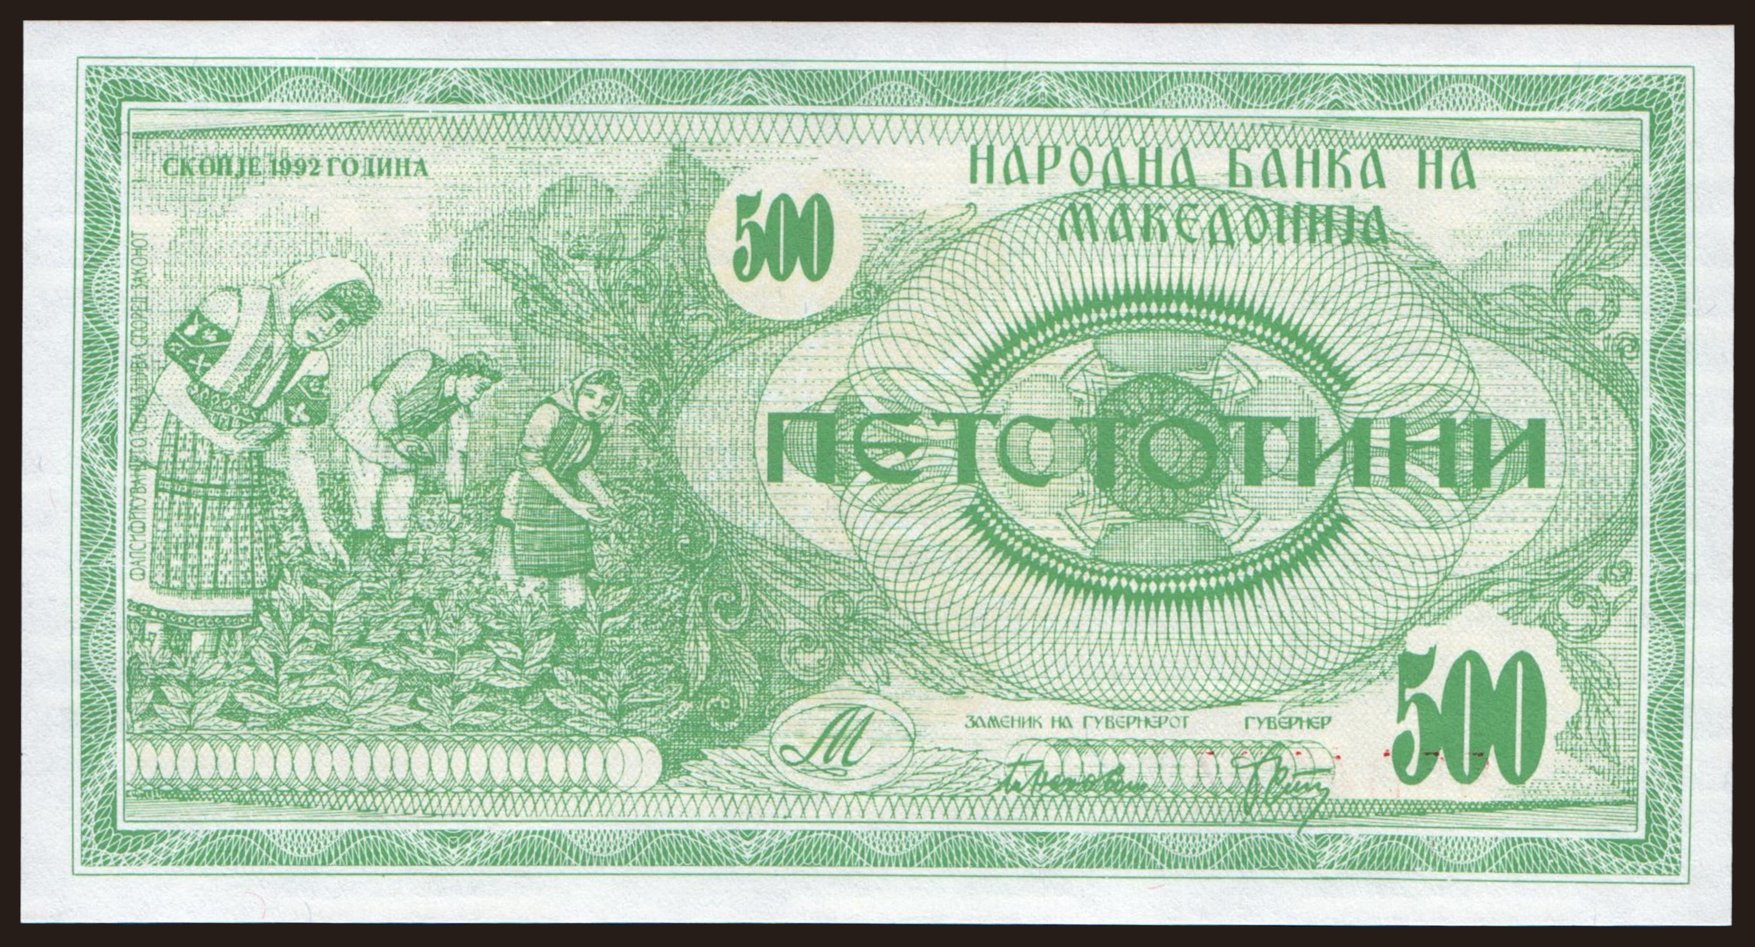 500 denari, 1992